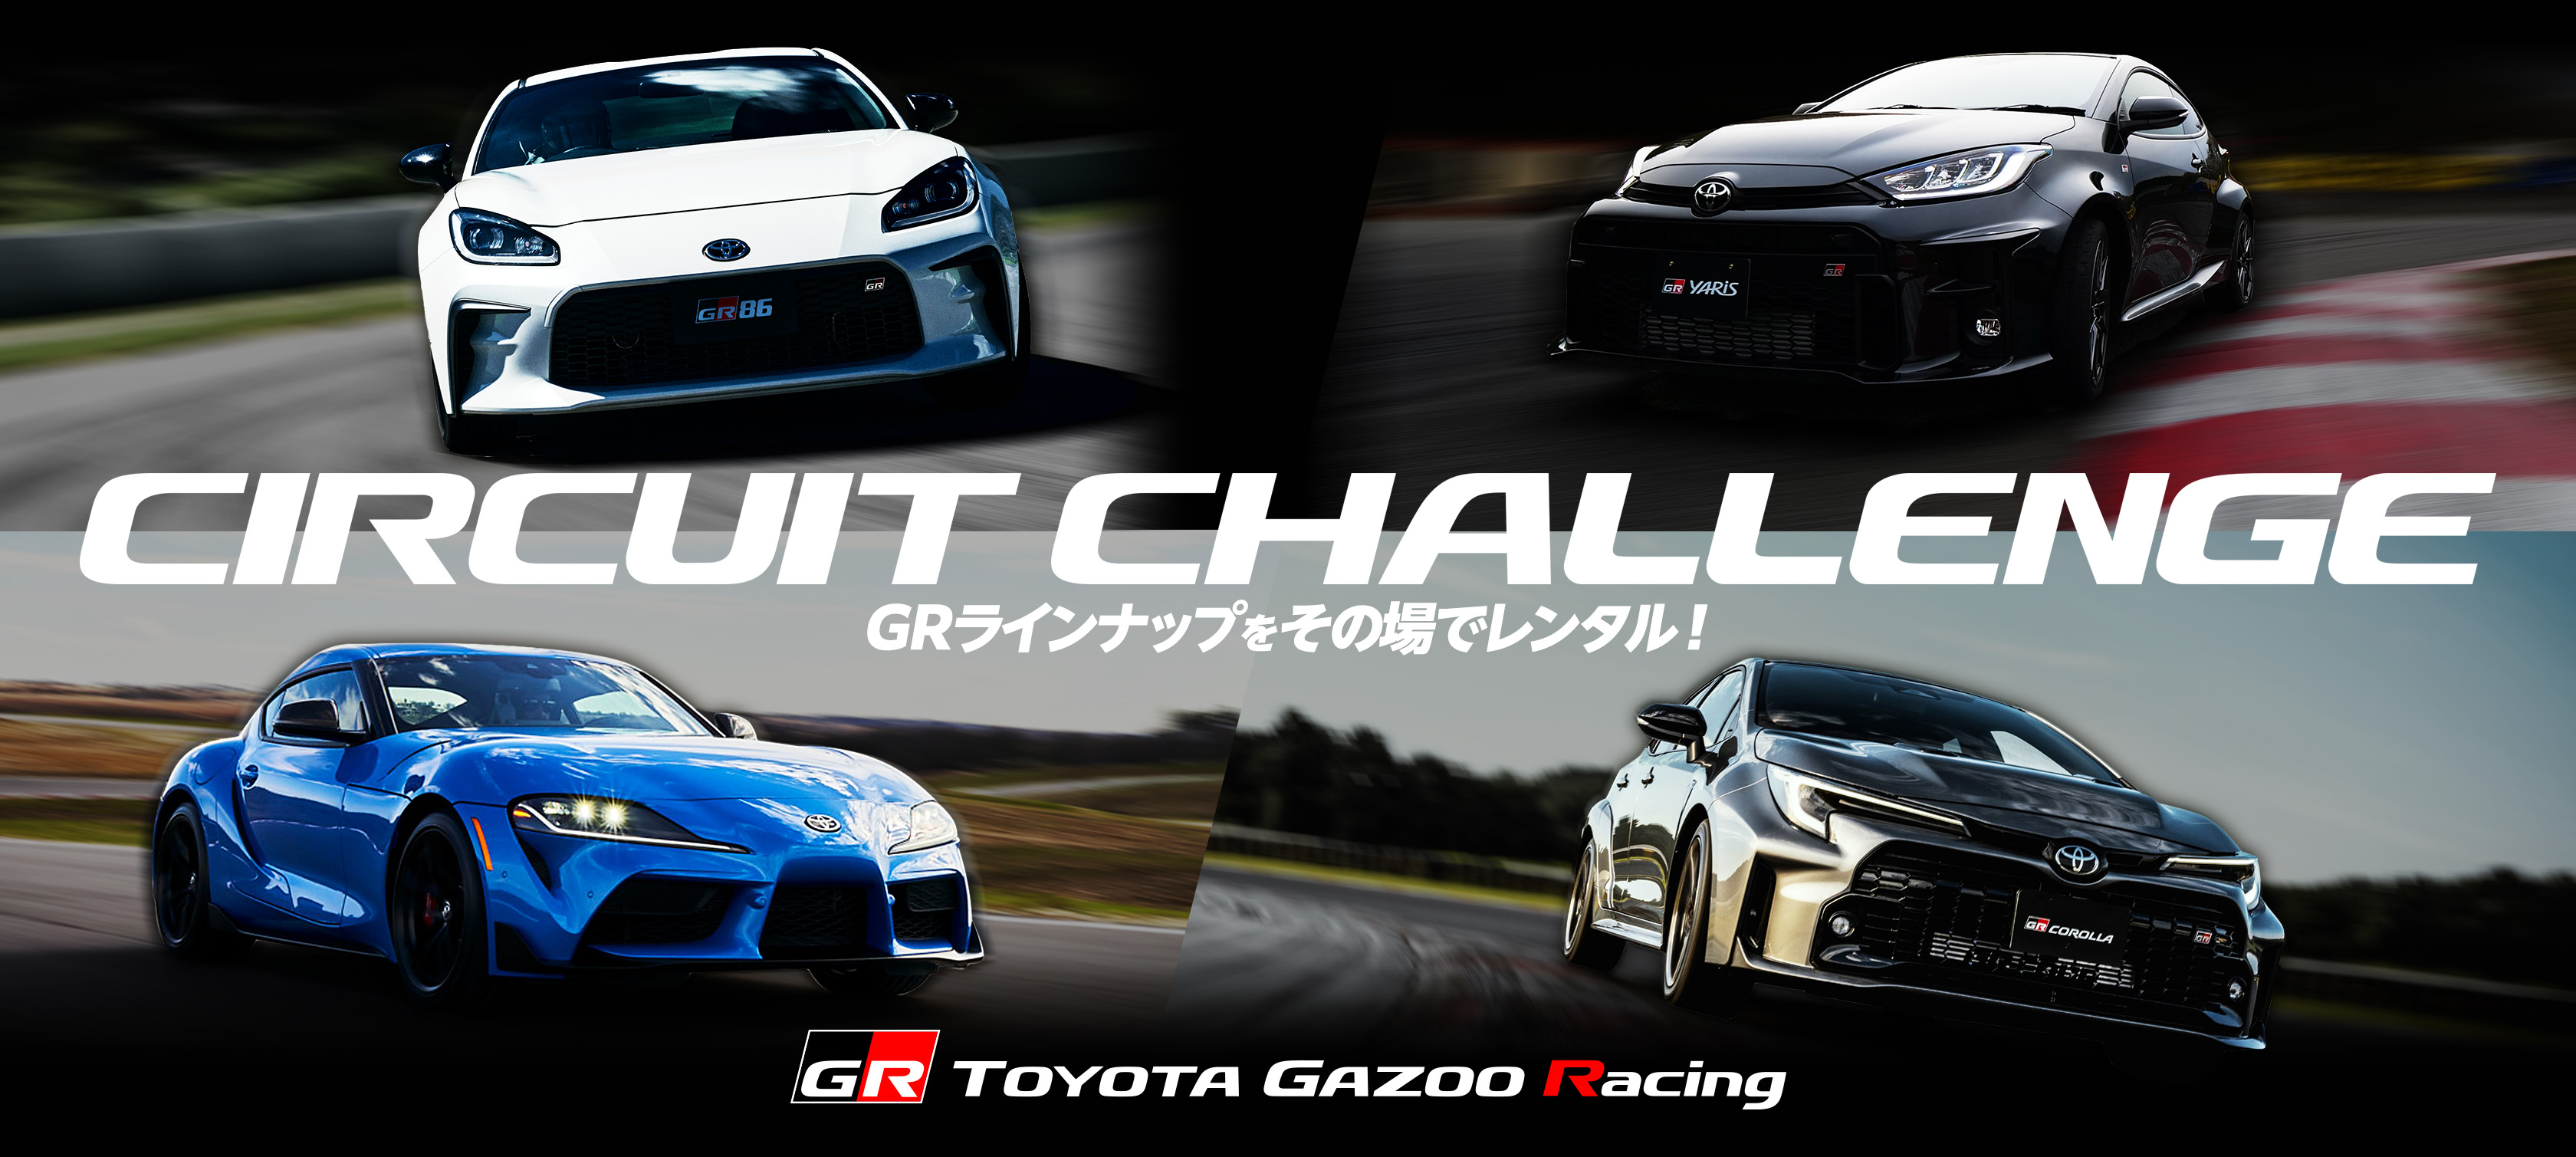 TOYOTA GAZOO Racing "Circuit-Challenge"